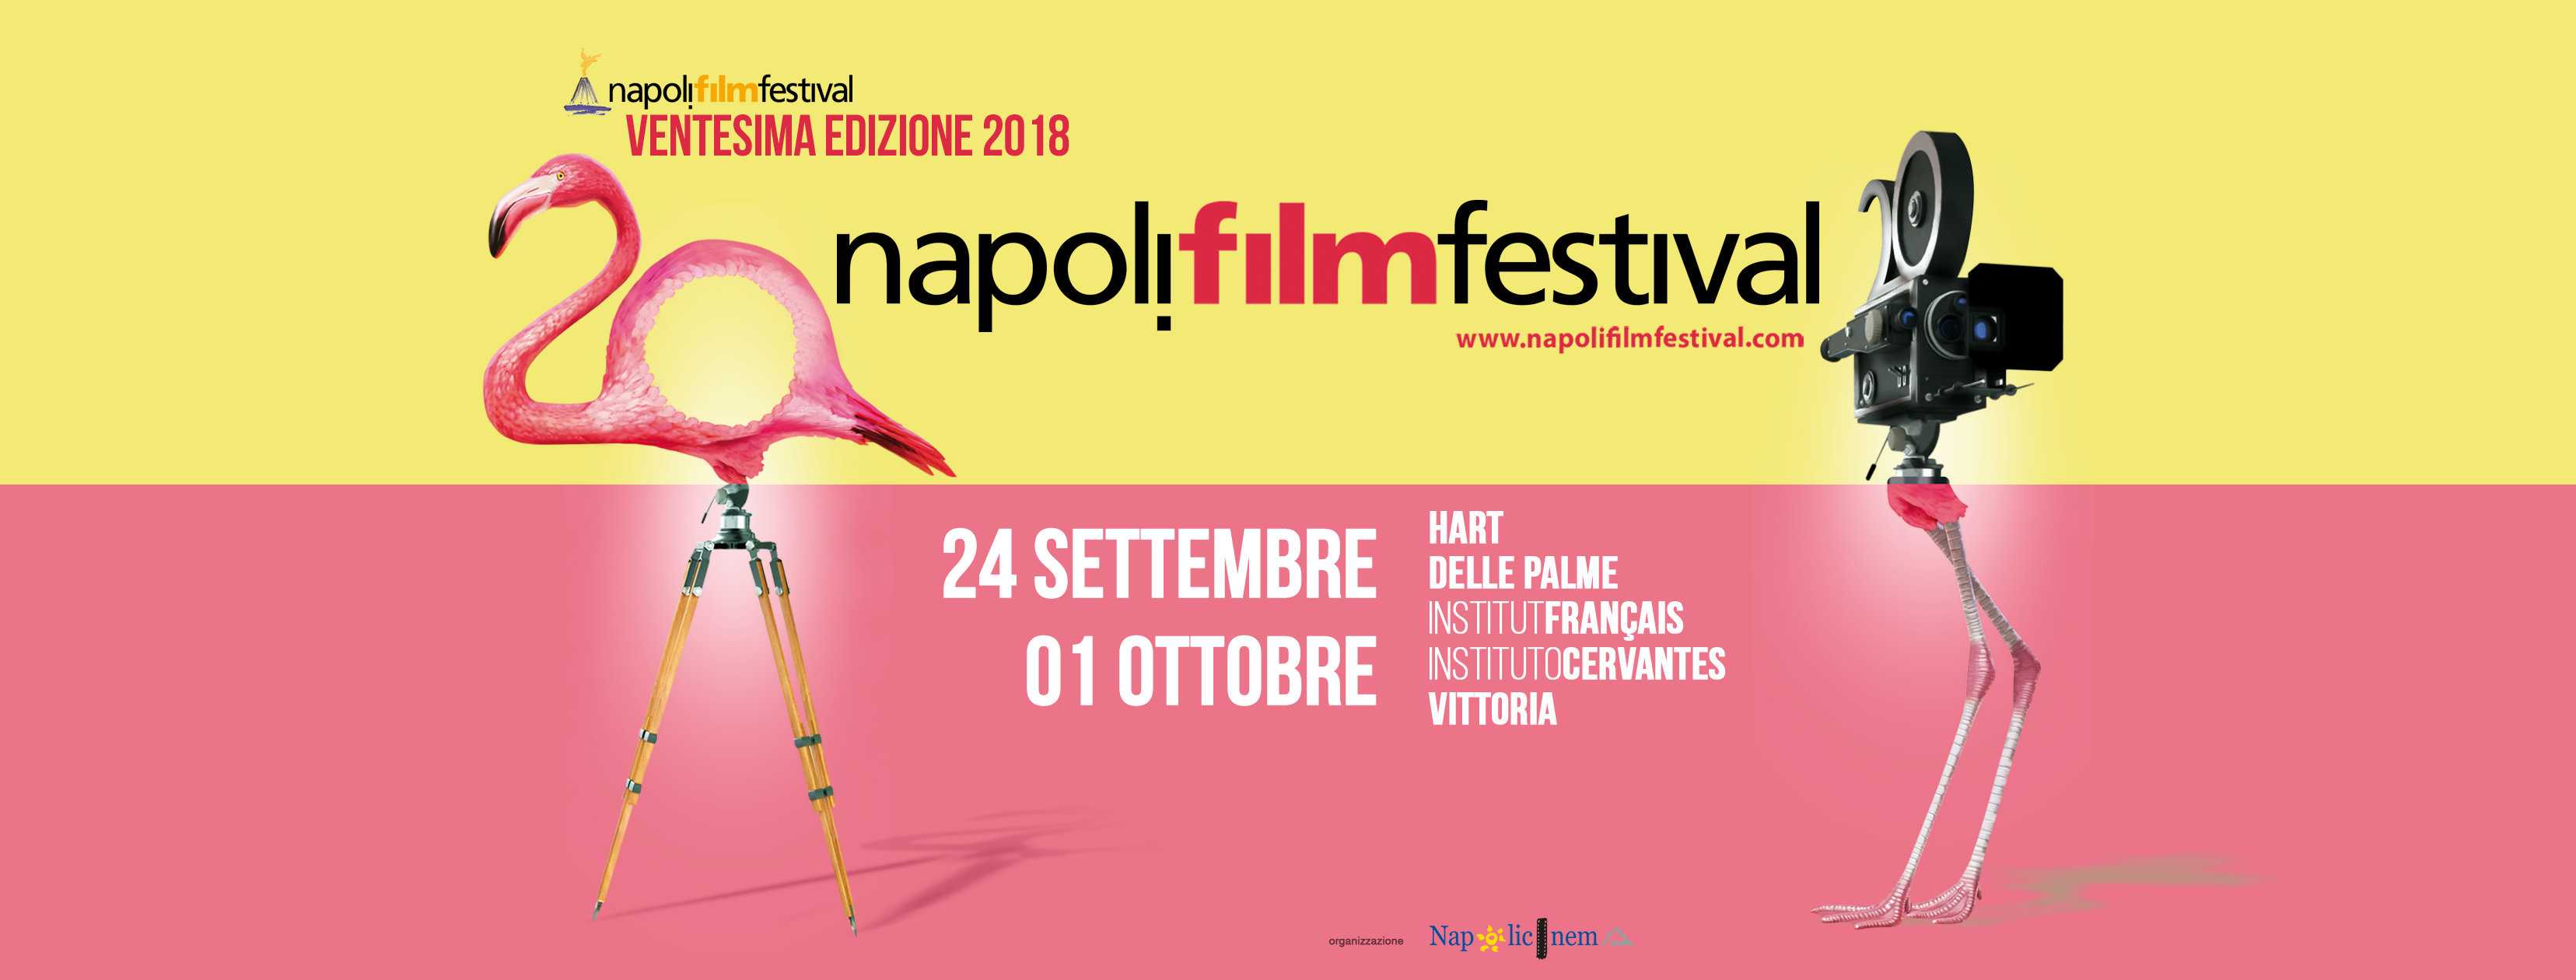 NAPOLI FILM FESTIVAL 2018 – VIDEOCLIP SESSIONS I° edizione